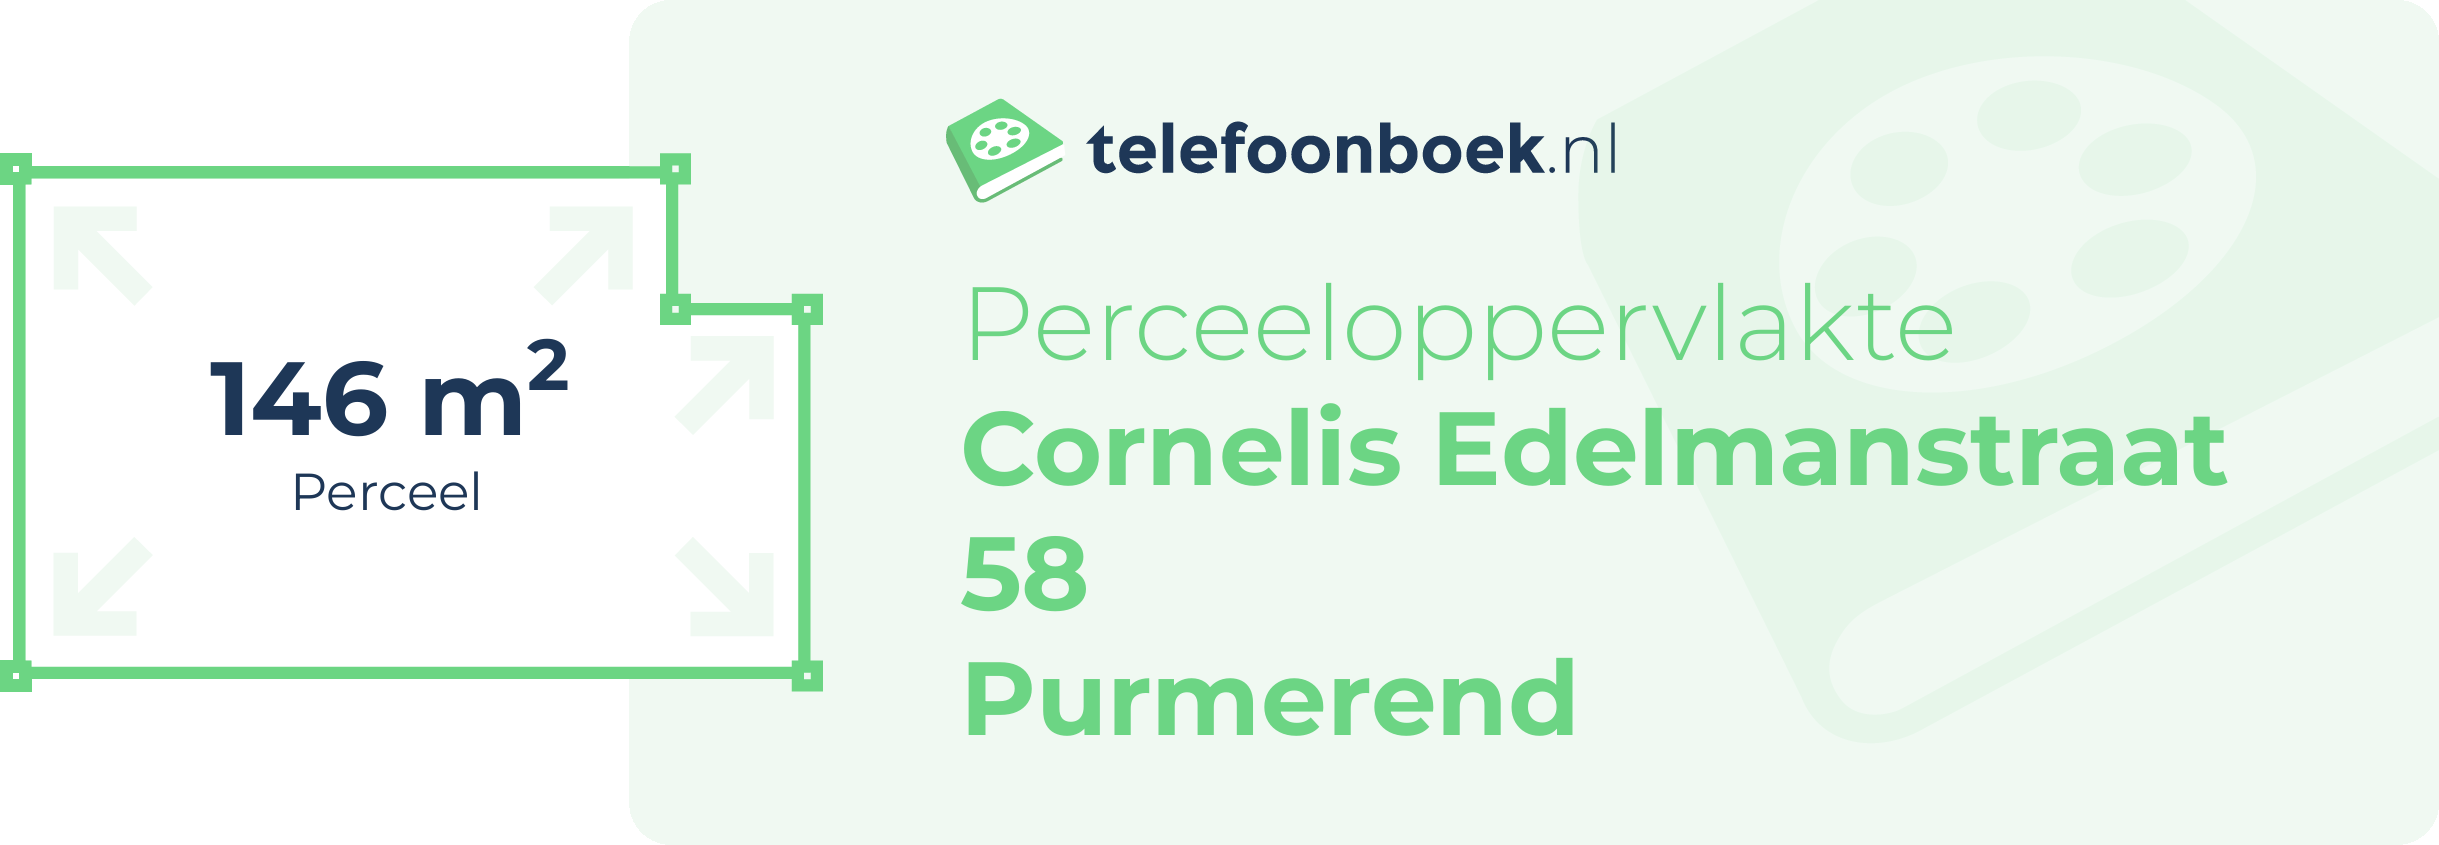 Perceeloppervlakte Cornelis Edelmanstraat 58 Purmerend